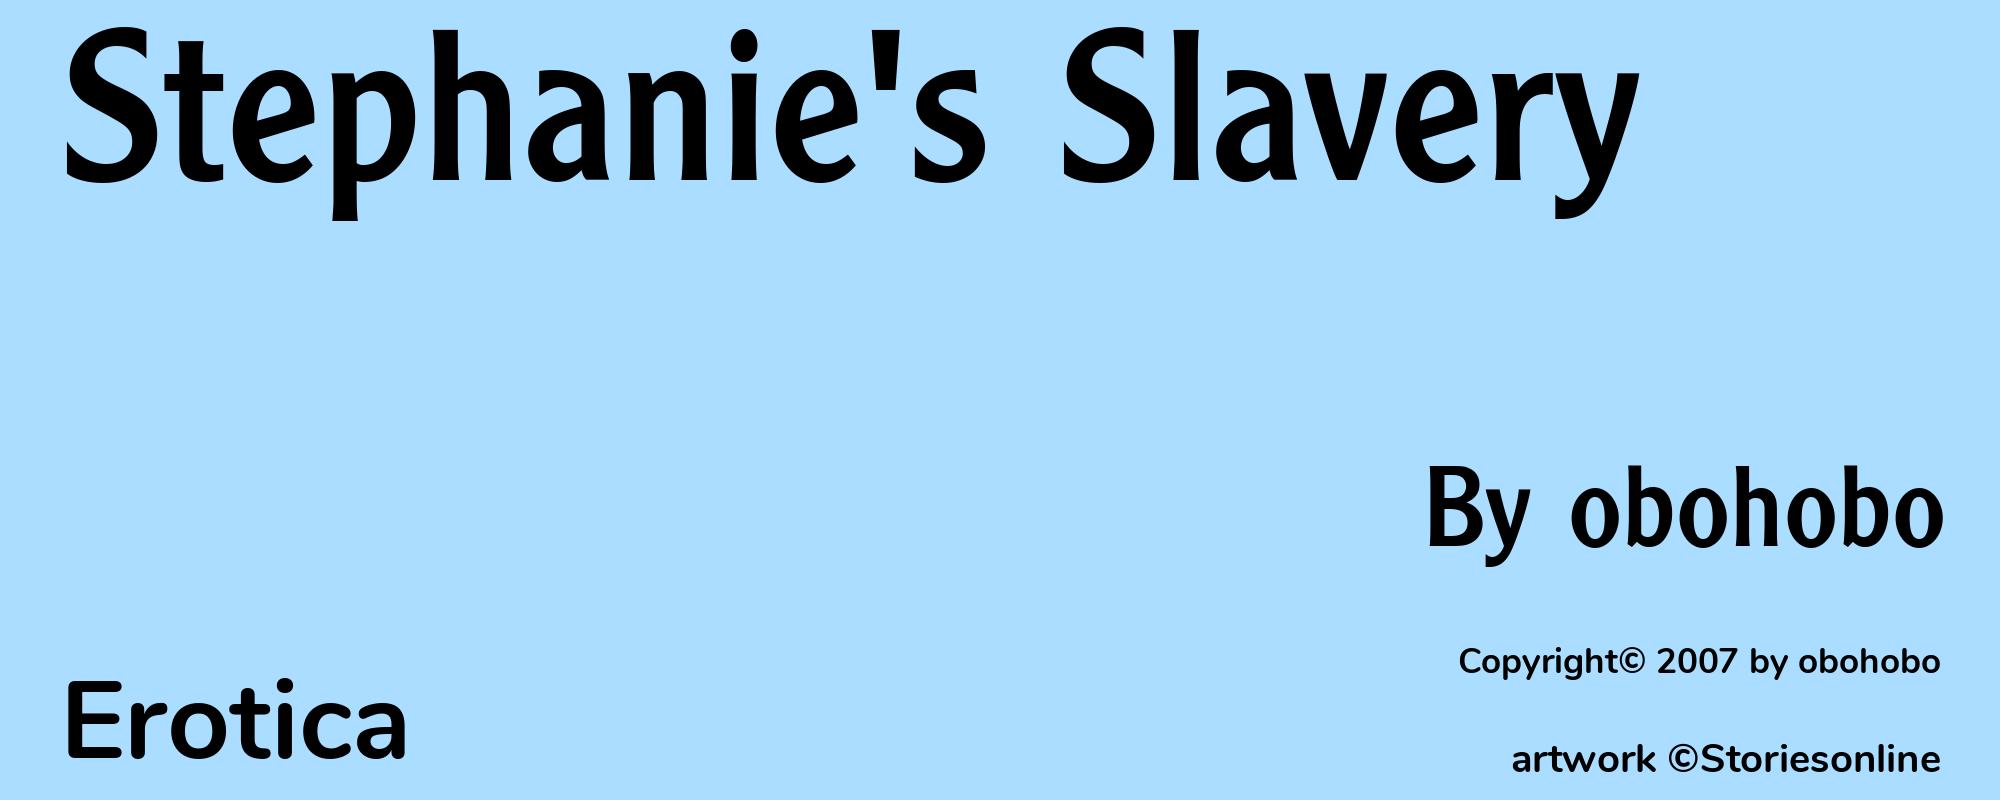 Stephanie's Slavery - Cover